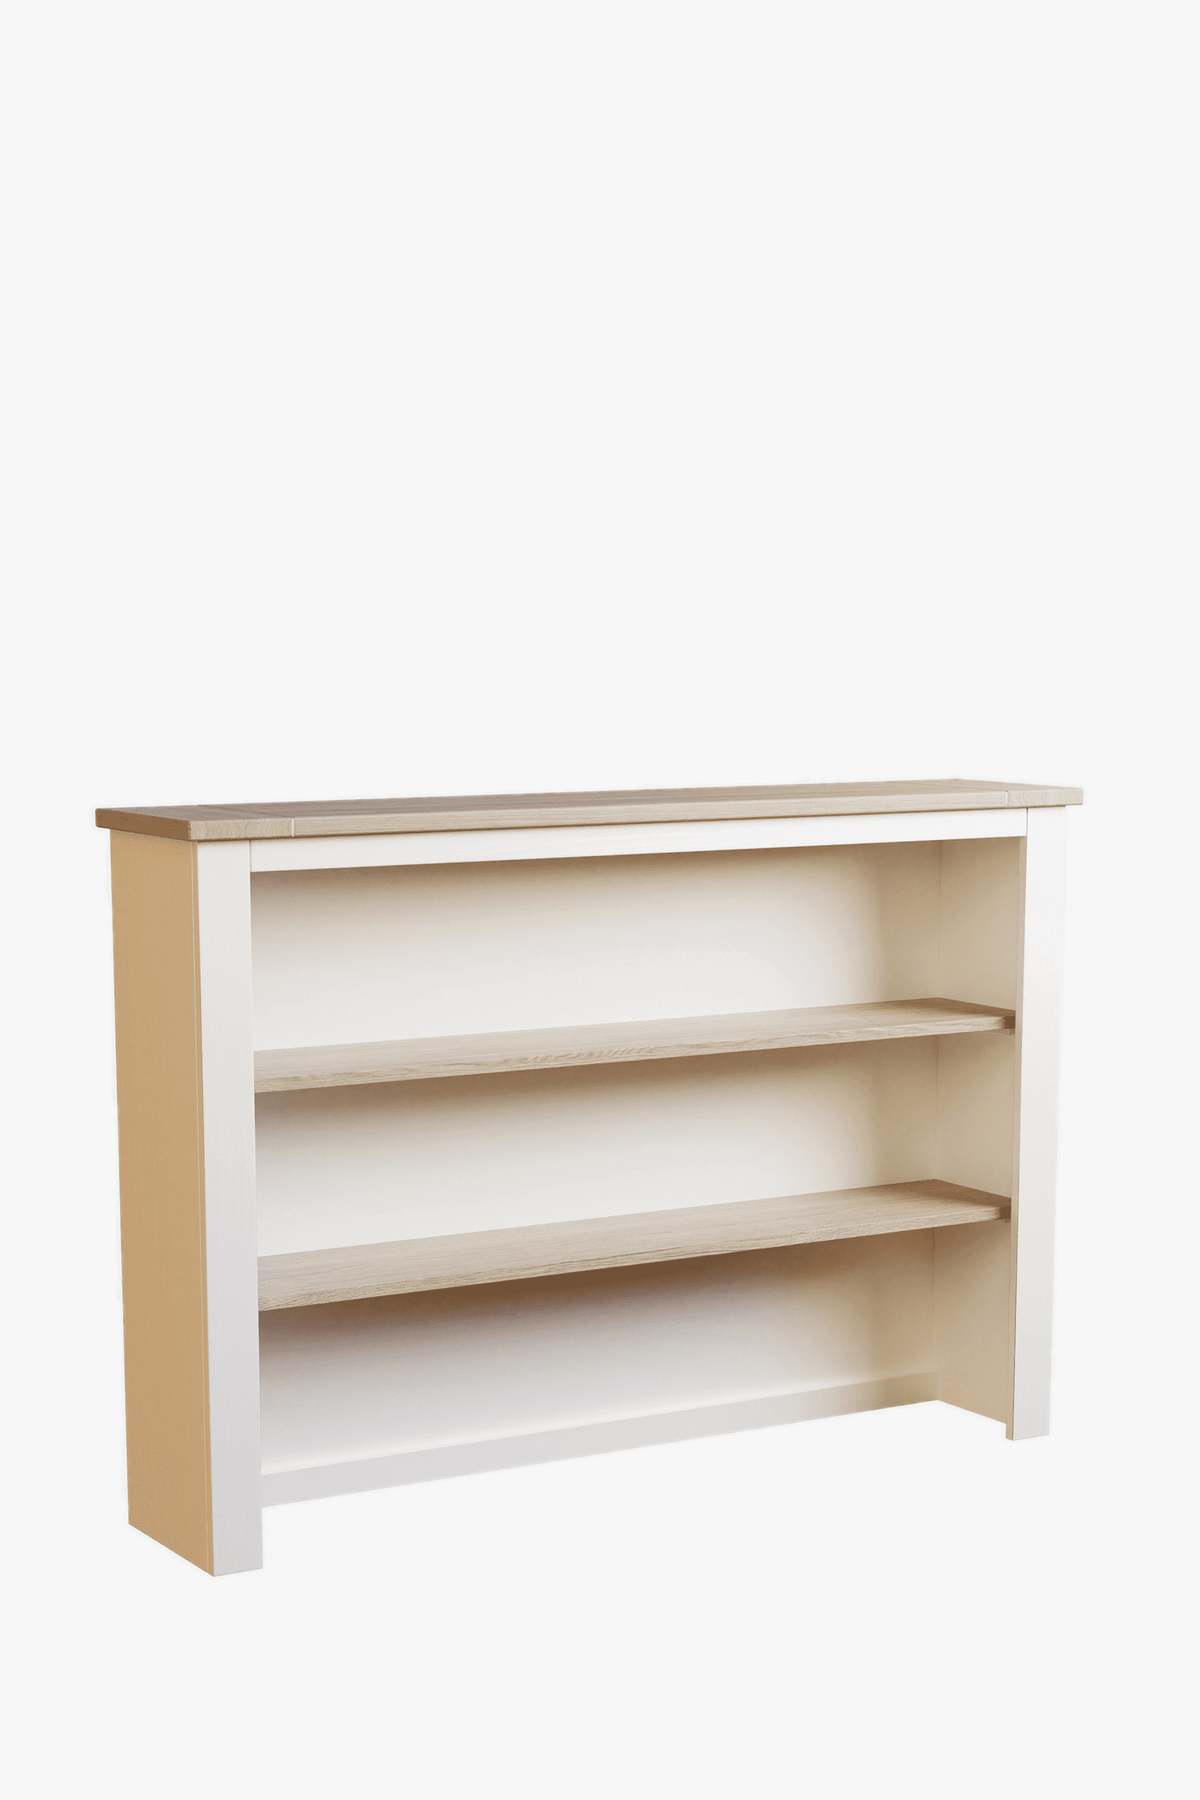 Dorset Dresser Top for 2 Door 3 Drawer Sideboard